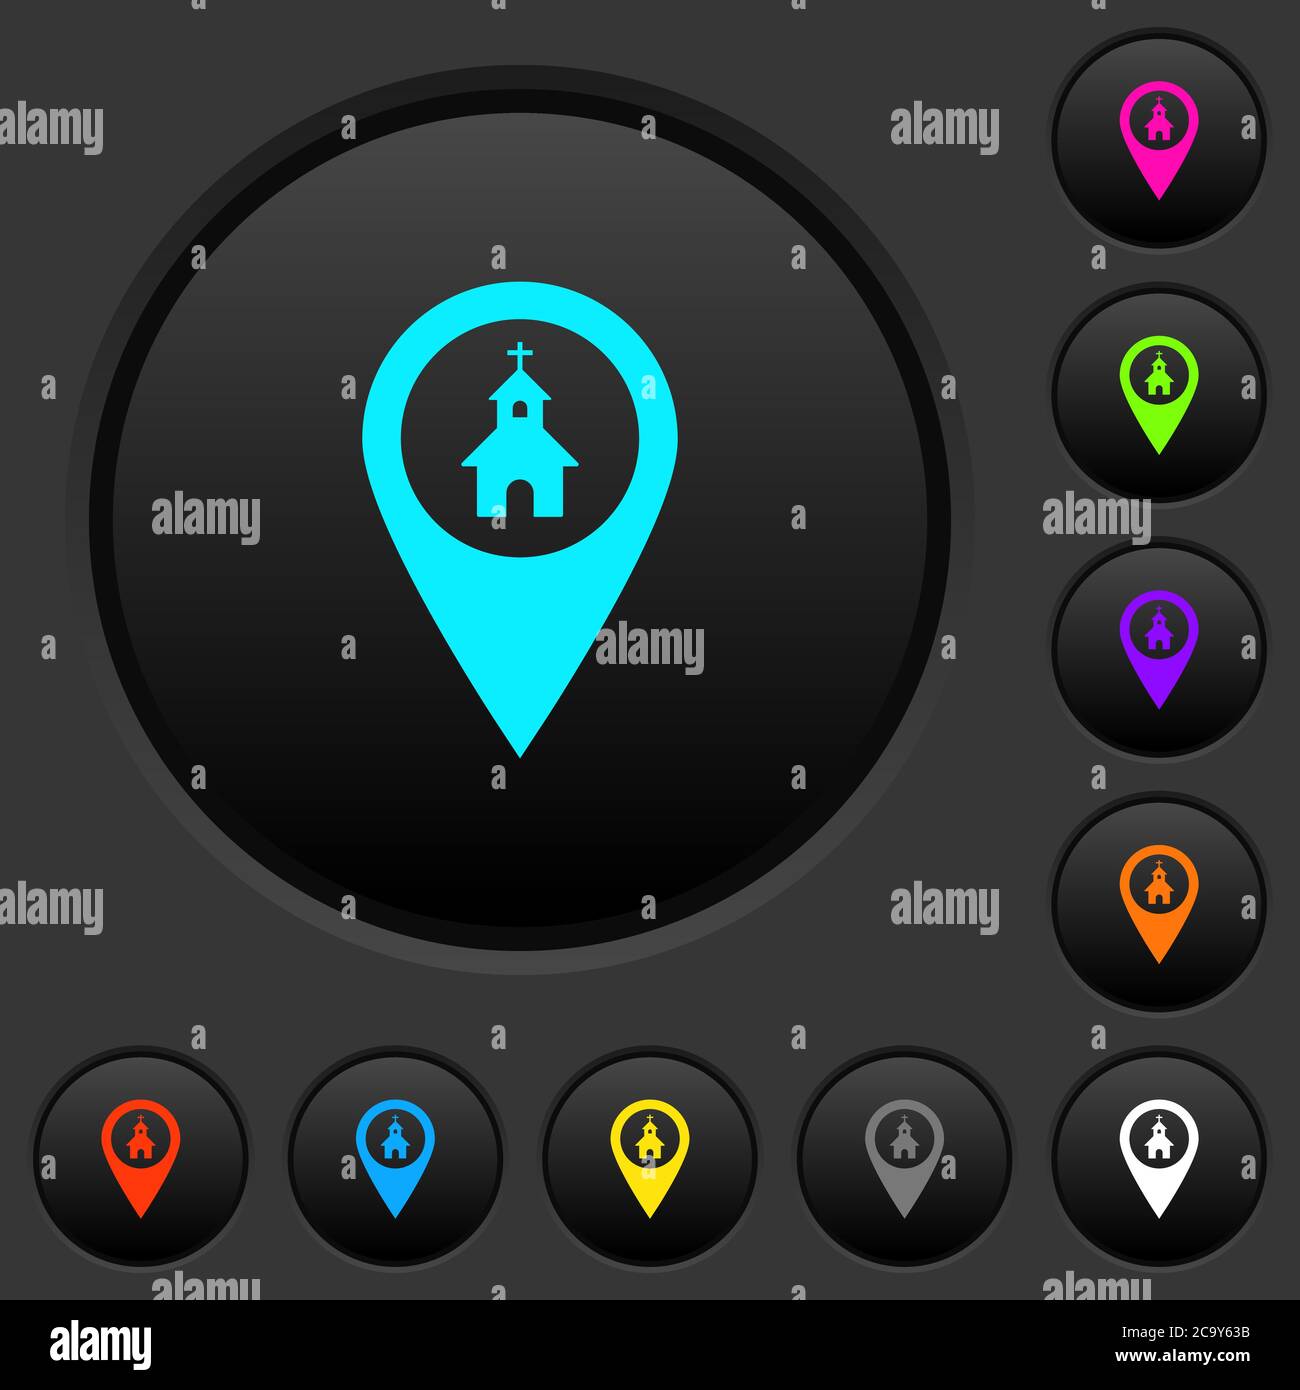 Chiesa GPS posizione mappa pulsanti scuri con icone di colori vivaci su sfondo grigio scuro Illustrazione Vettoriale